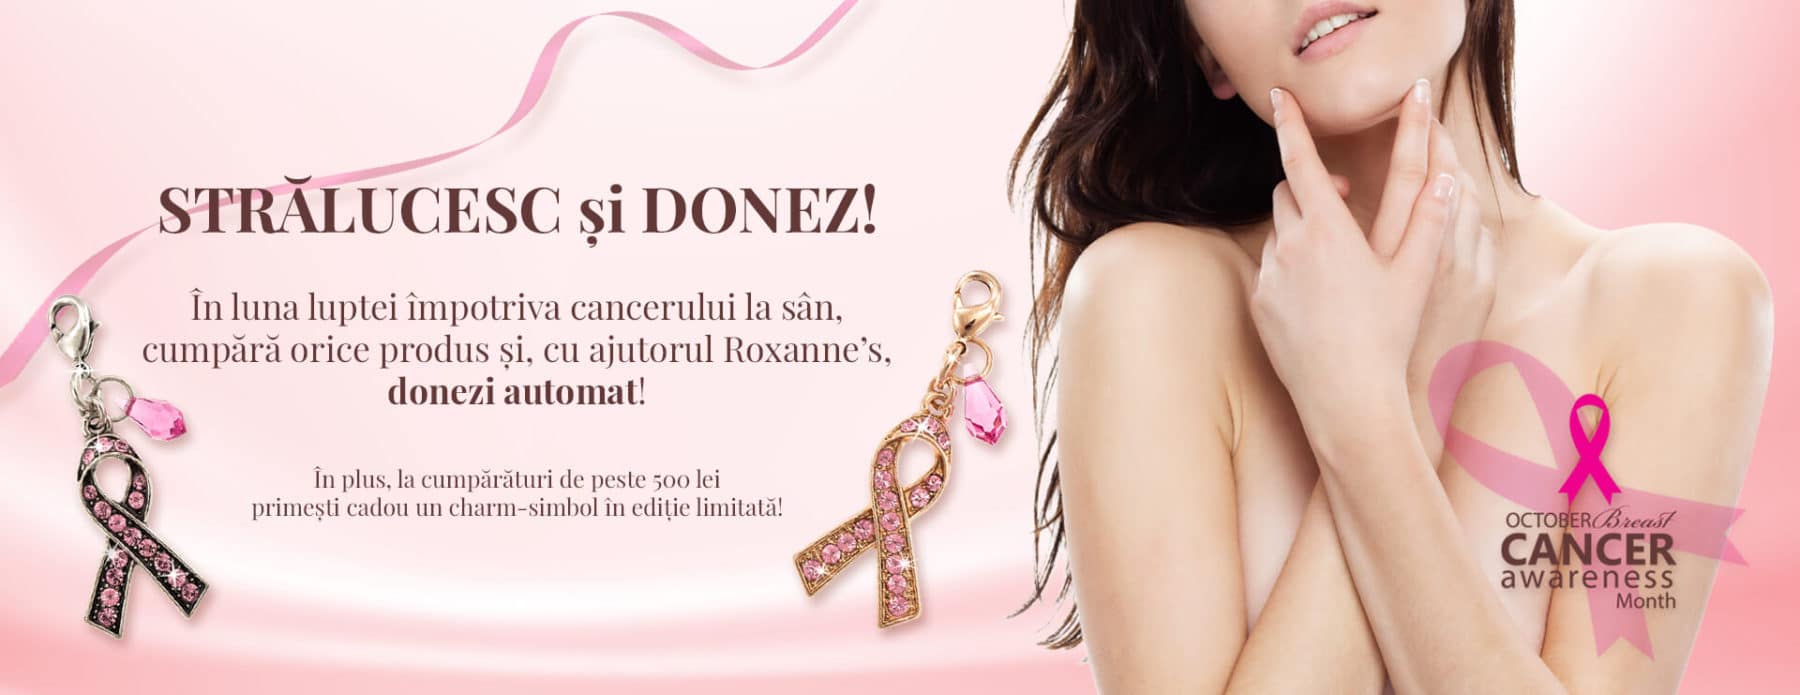 Campania “Strălucesc și donez” Ajută femeile diagnosticate cu cancer mamar din România!